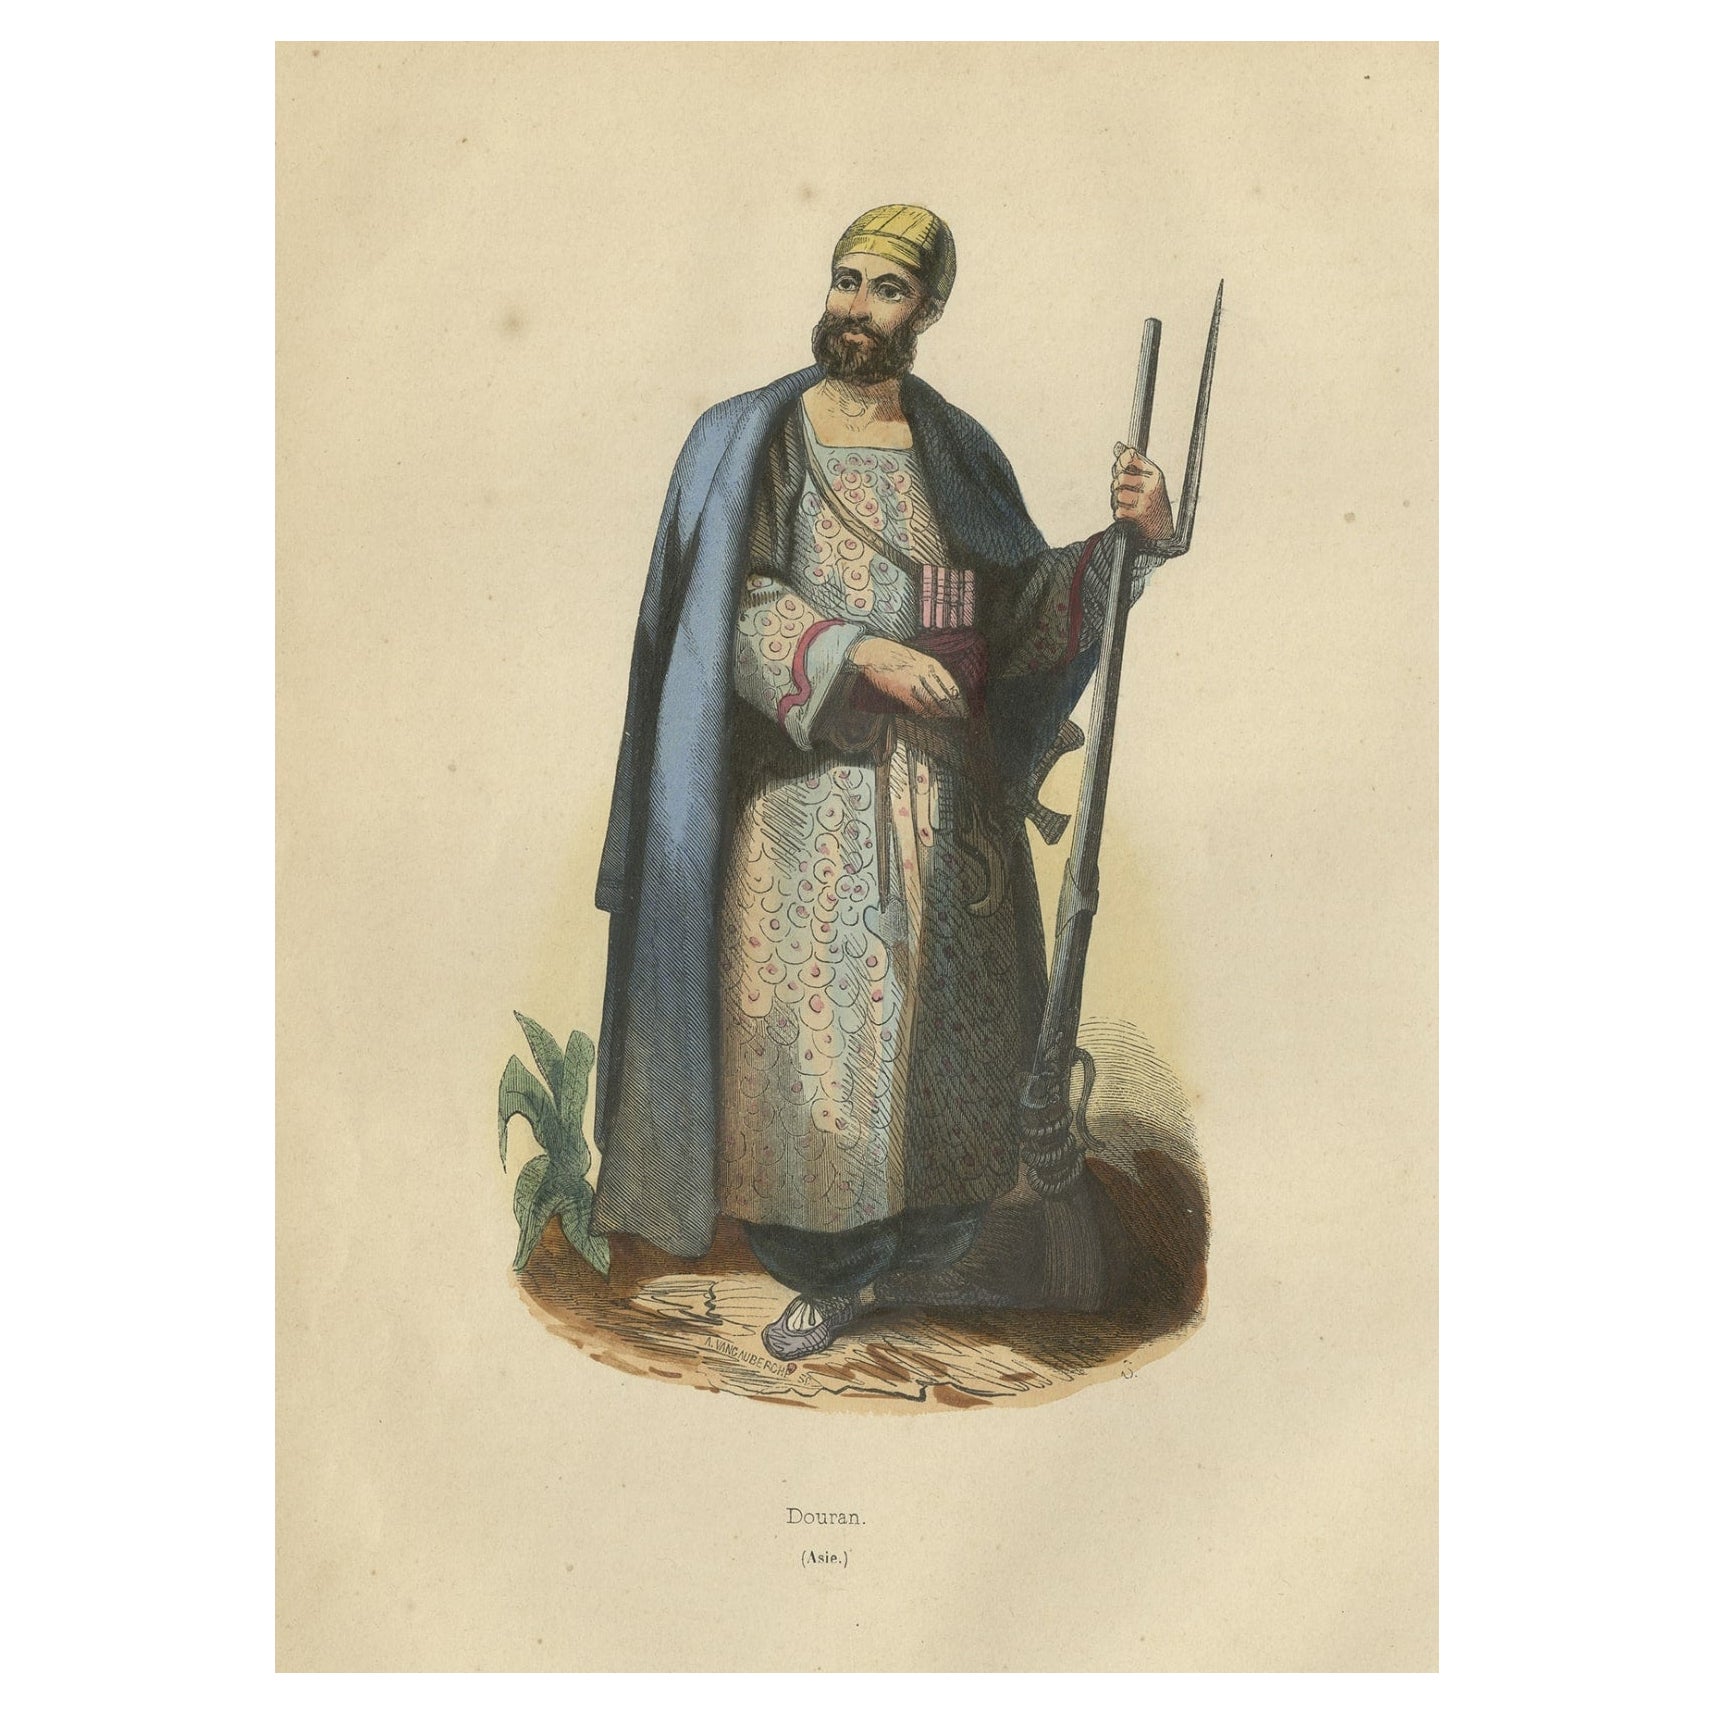 Impression de costume antique d'un "Douran" arabe avec des armes en Asie, 1843